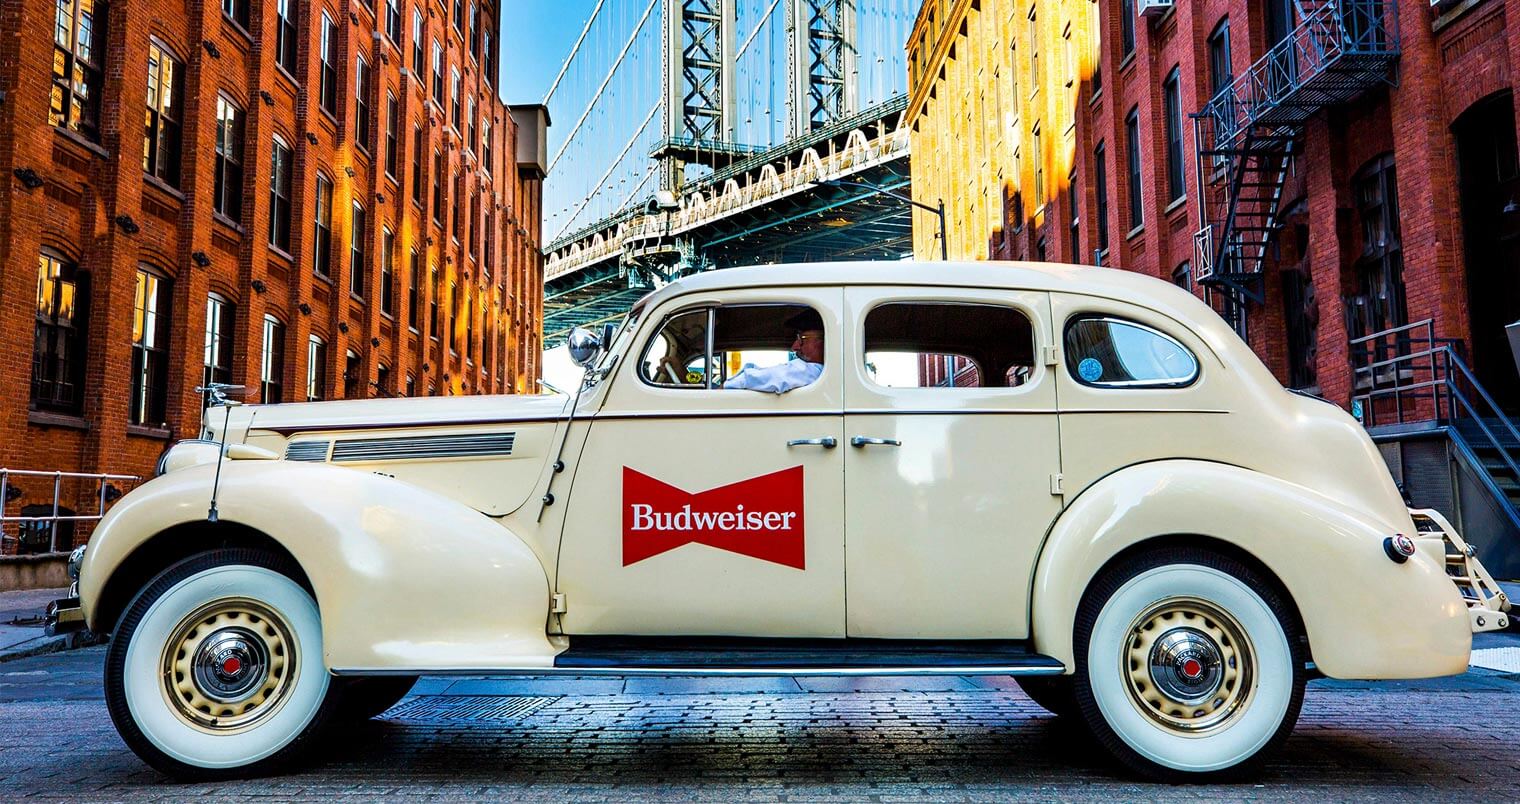 Budweiser Antique Lyft Car, featured image